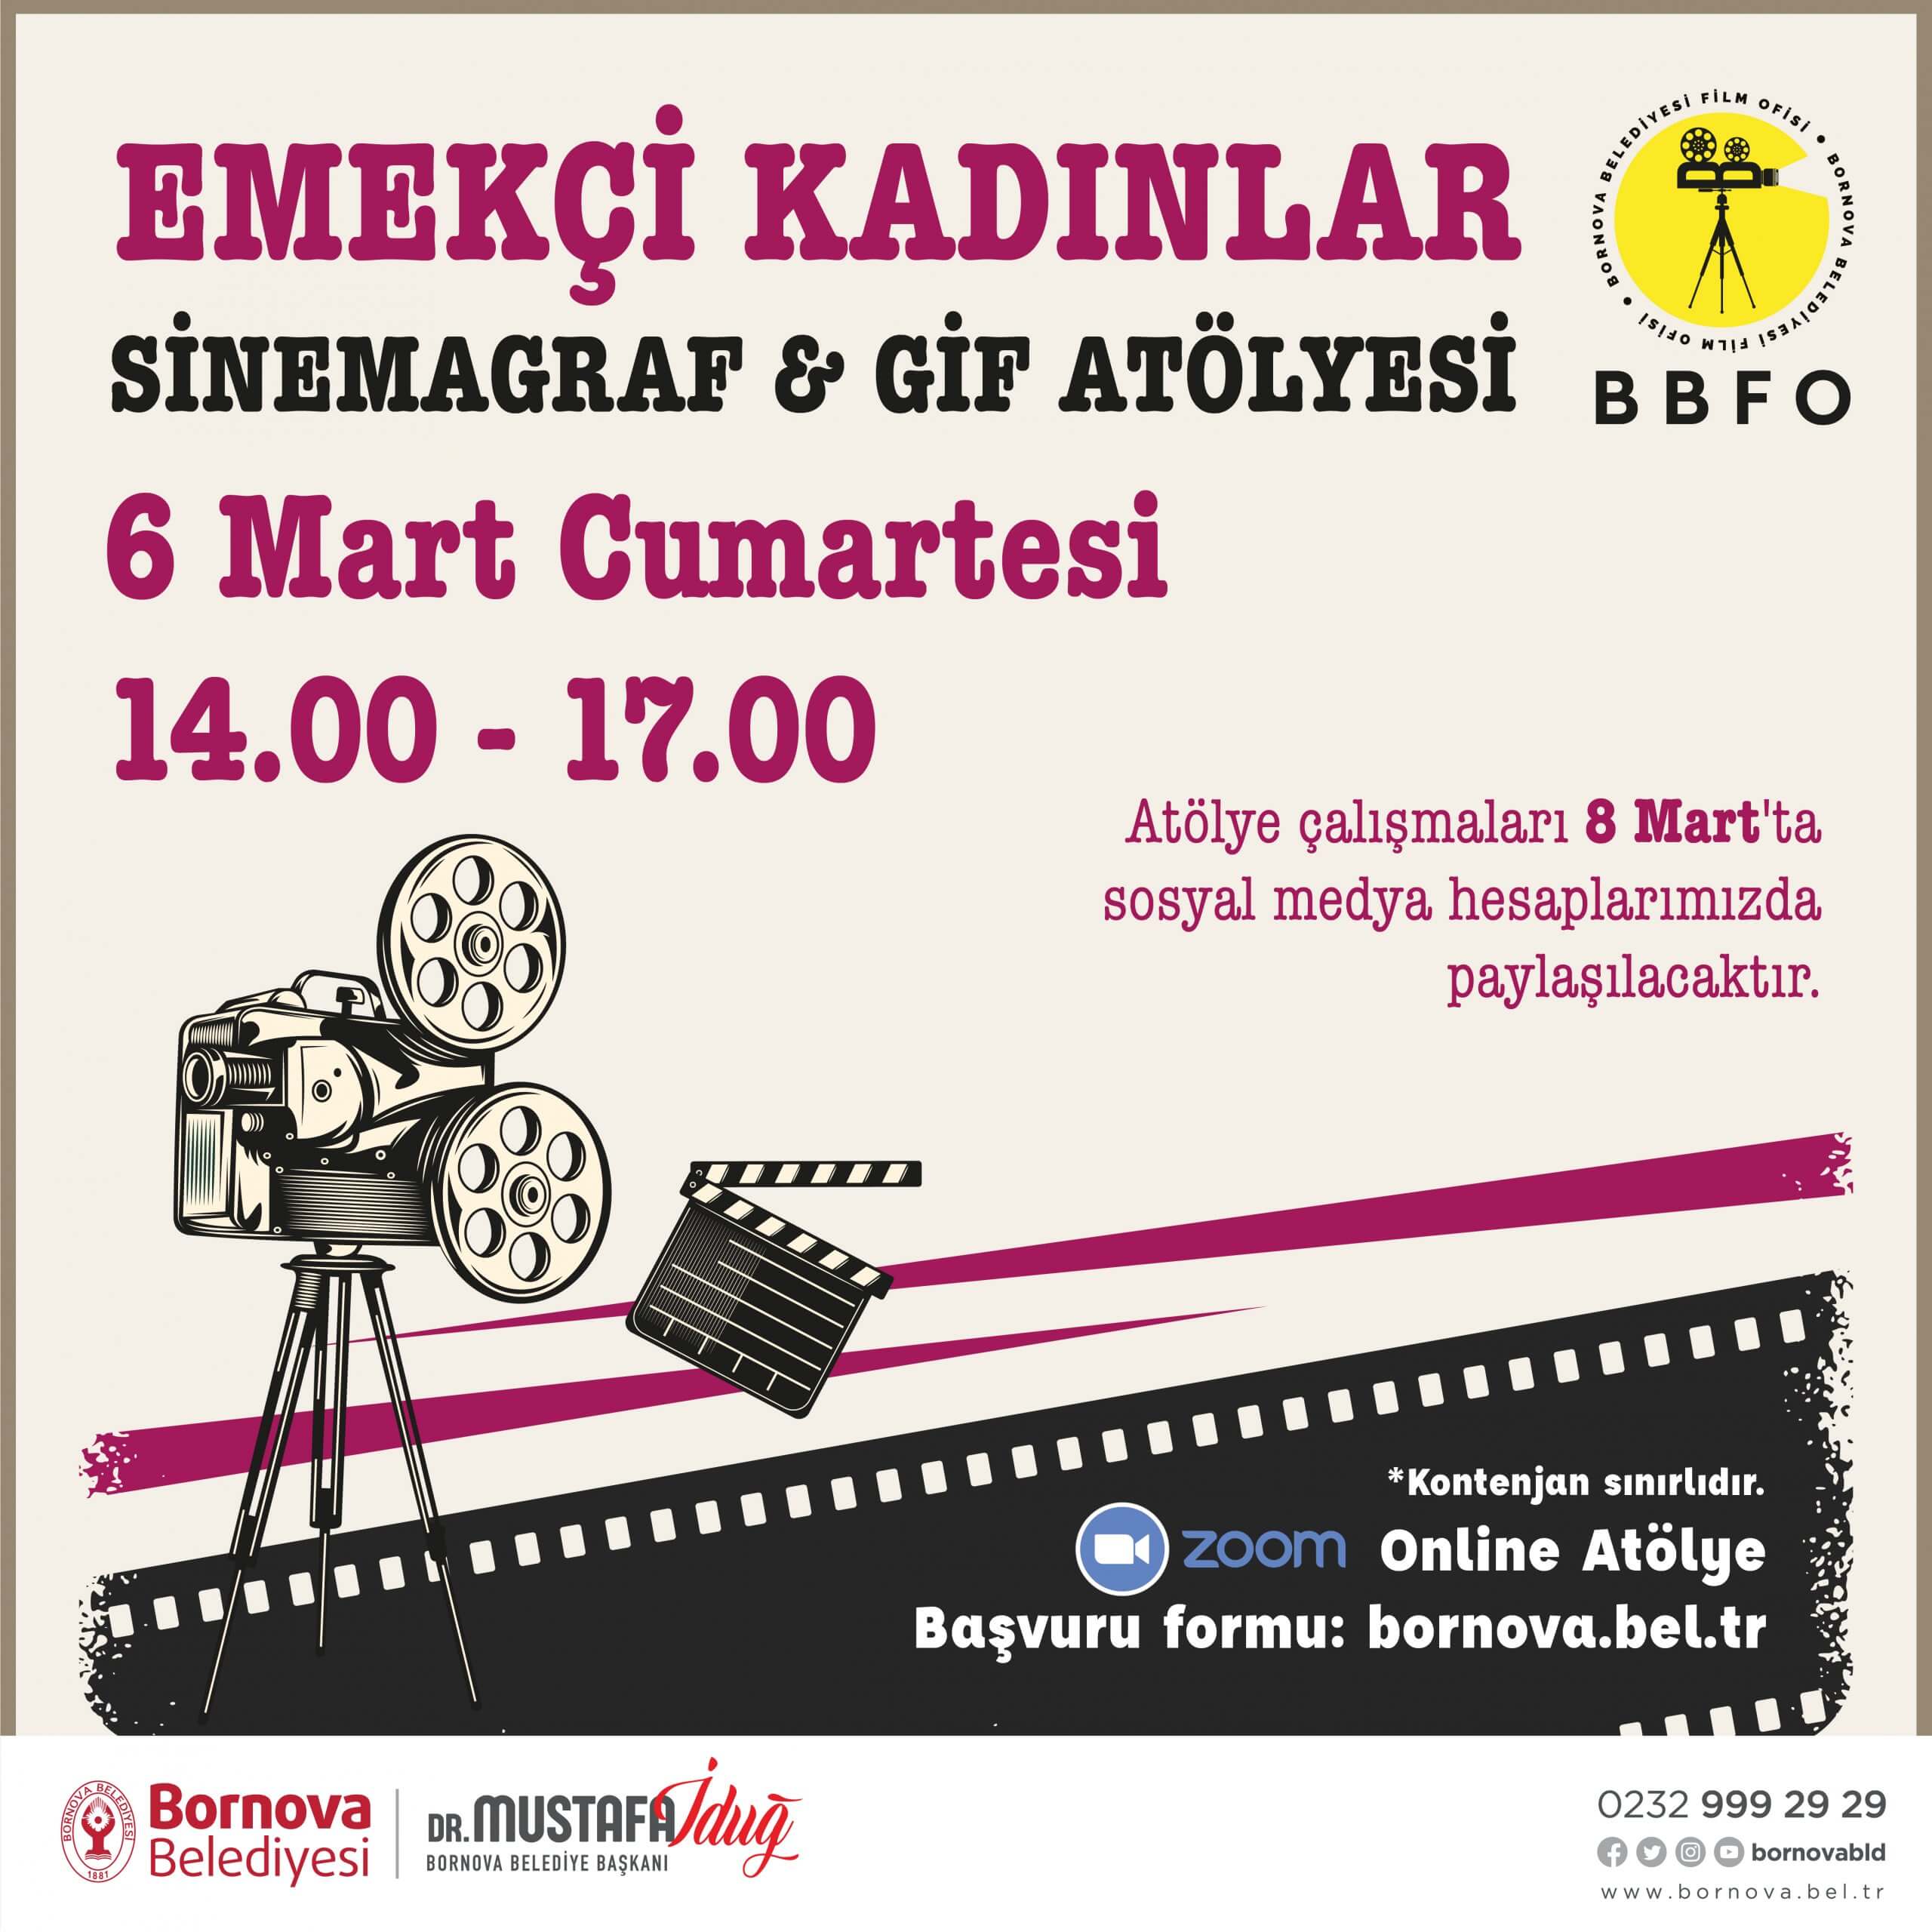 Bornova Belediyesi tarafından düzenlenecek olan Sinemagraf ve GİF Atölyesi ile katılımcılar gündelik dertlerini ve rutinlerini anlatmak için sinema ve fotoğraf dilini kullanma yöntemlerini öğrenecekler.